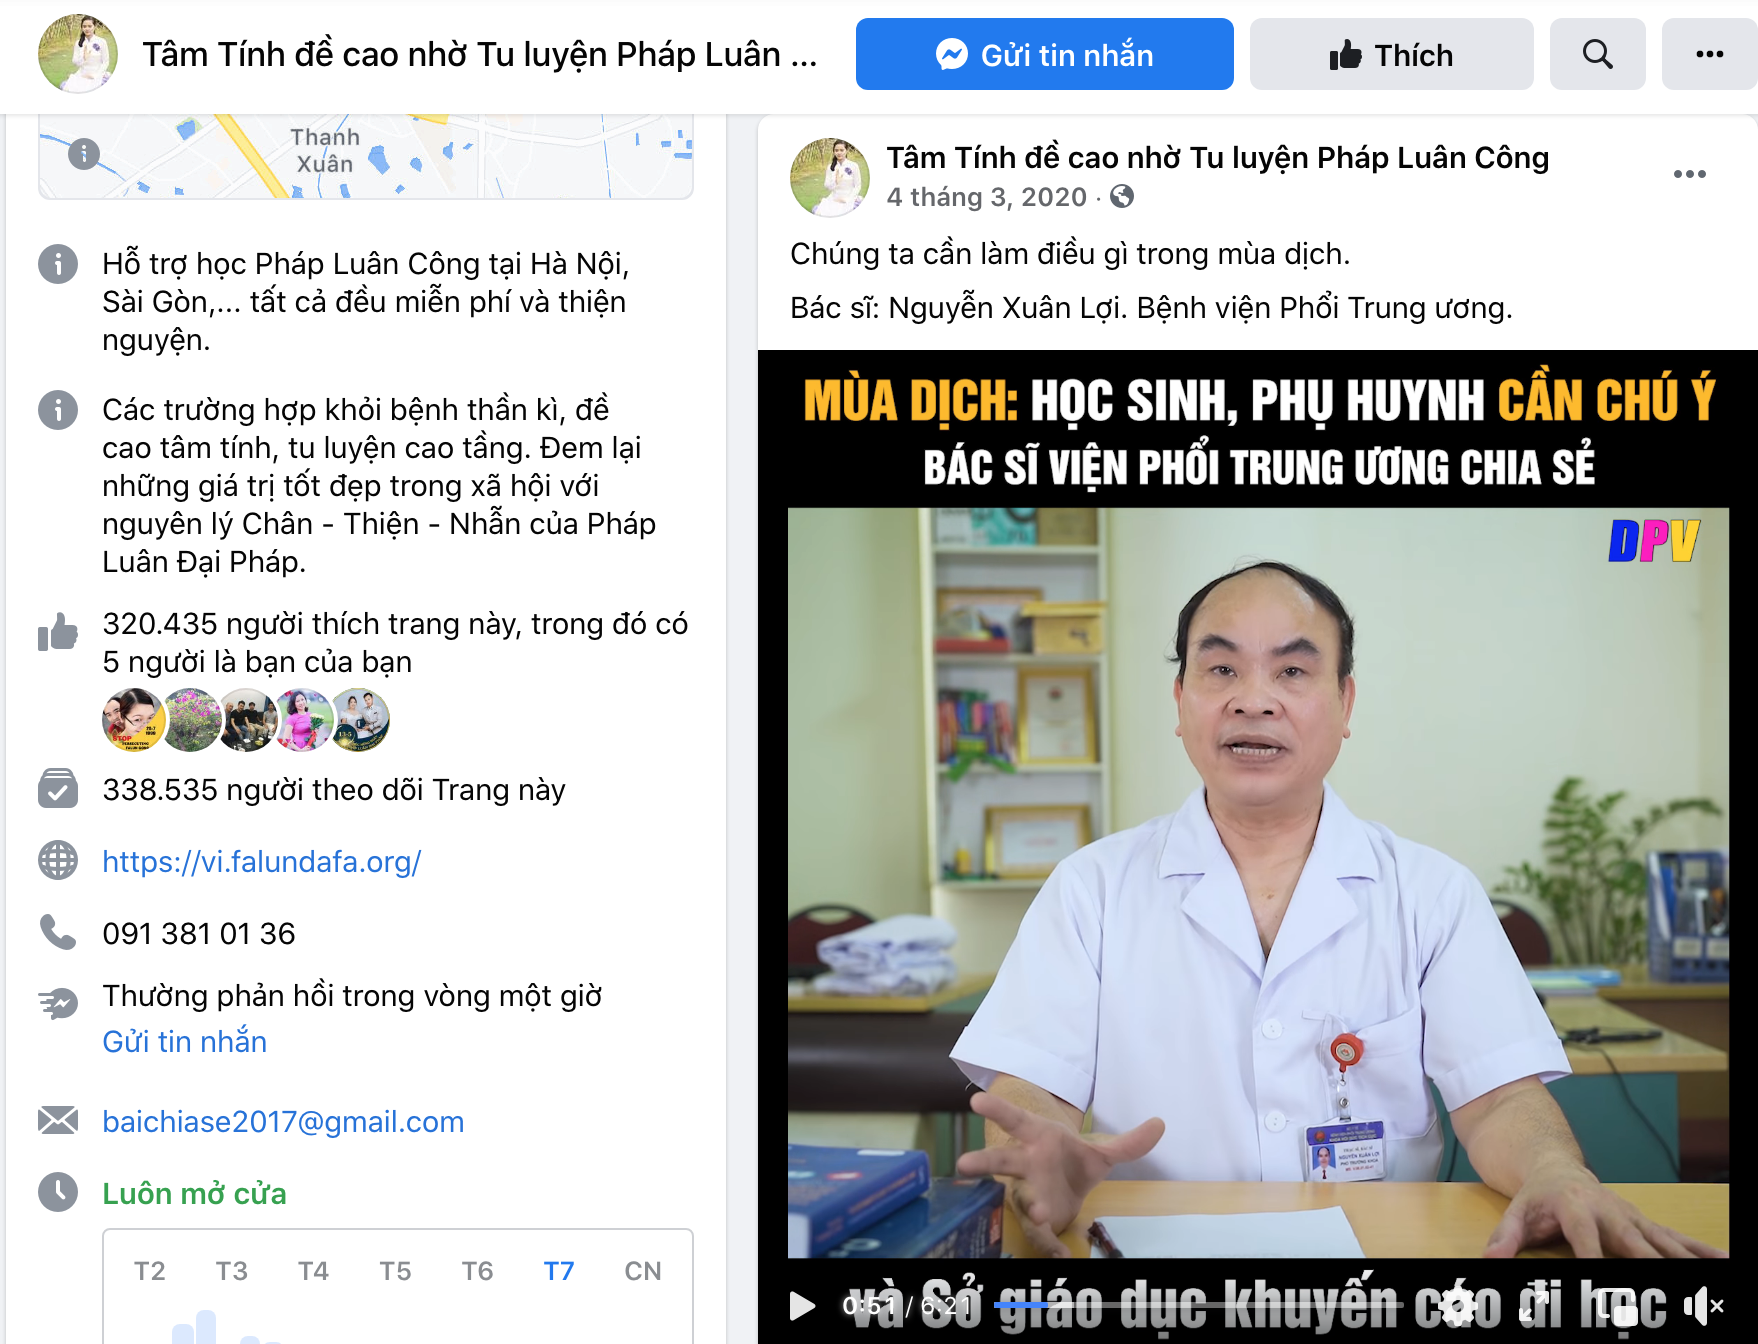 Ảnh chụp màn hình Fanpage của Trang Đề Cao Tâm Tính - Trang có hơn 338 nghìn người theo dõi. Pháp Luân Công Facebook